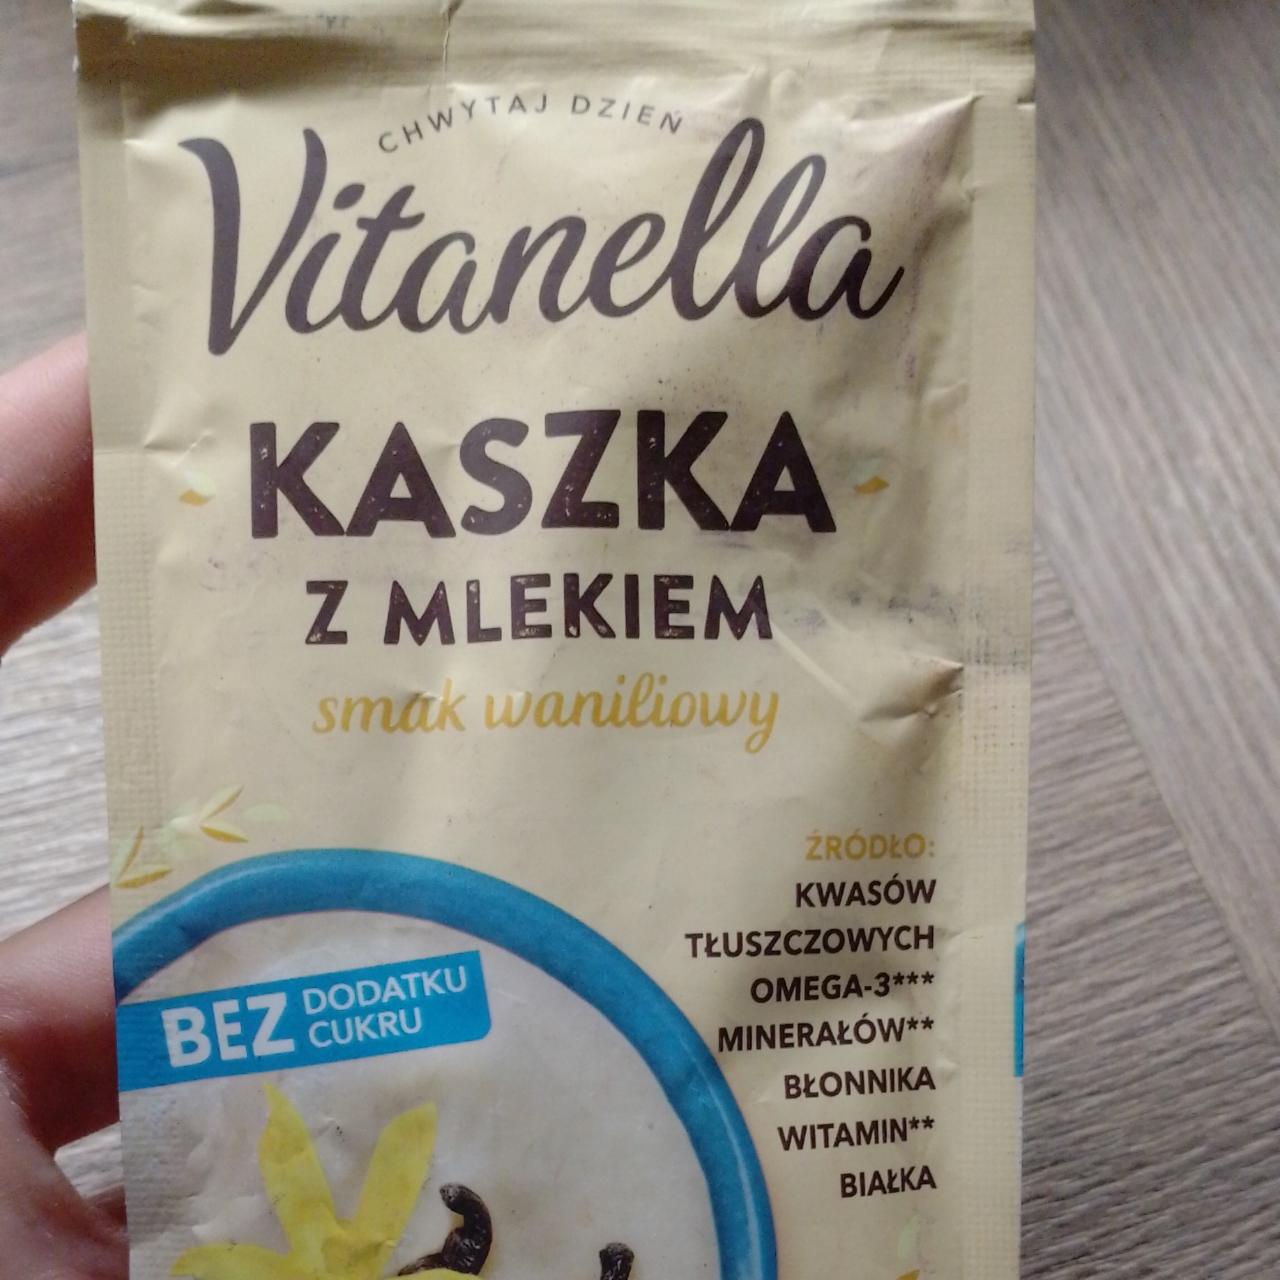 Fotografie - kaszka z mlekiem smak waniliowy Vitanella